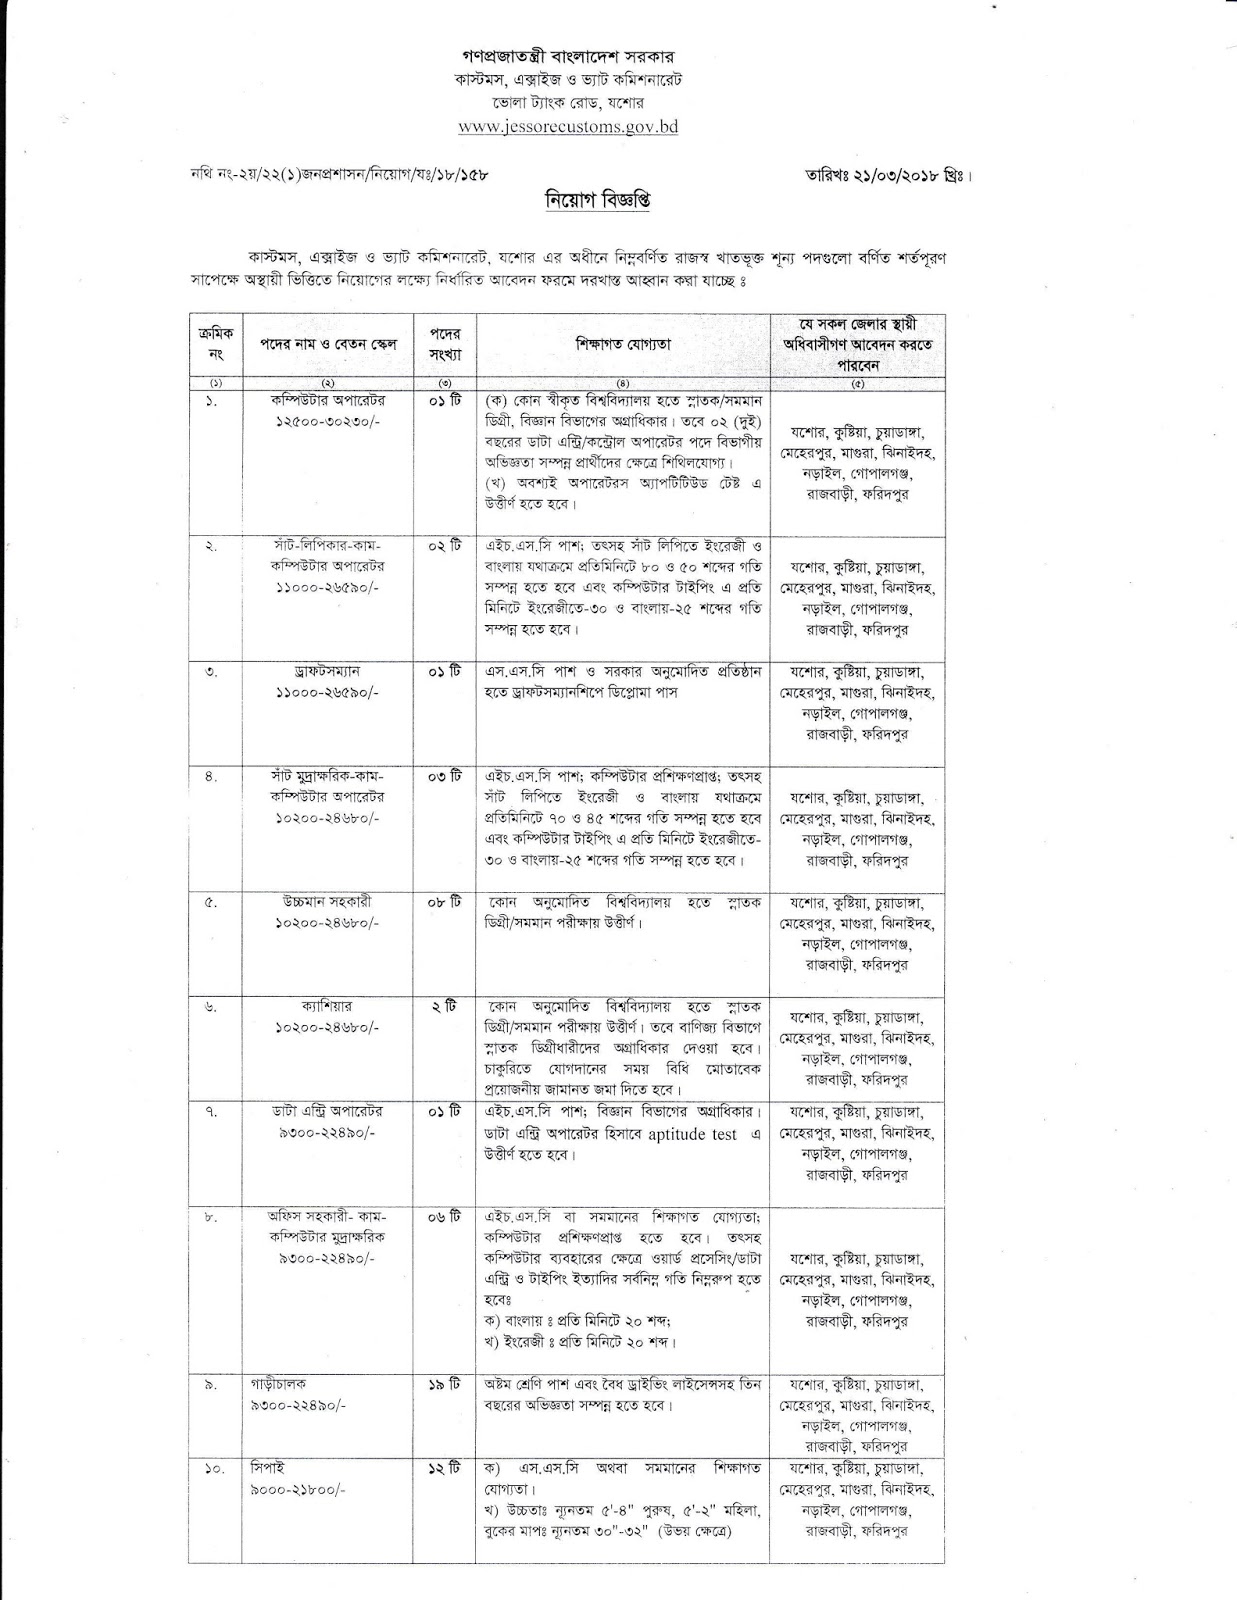 Customs, Excise and VAT commissionerate, Jessore Job Circular 2018